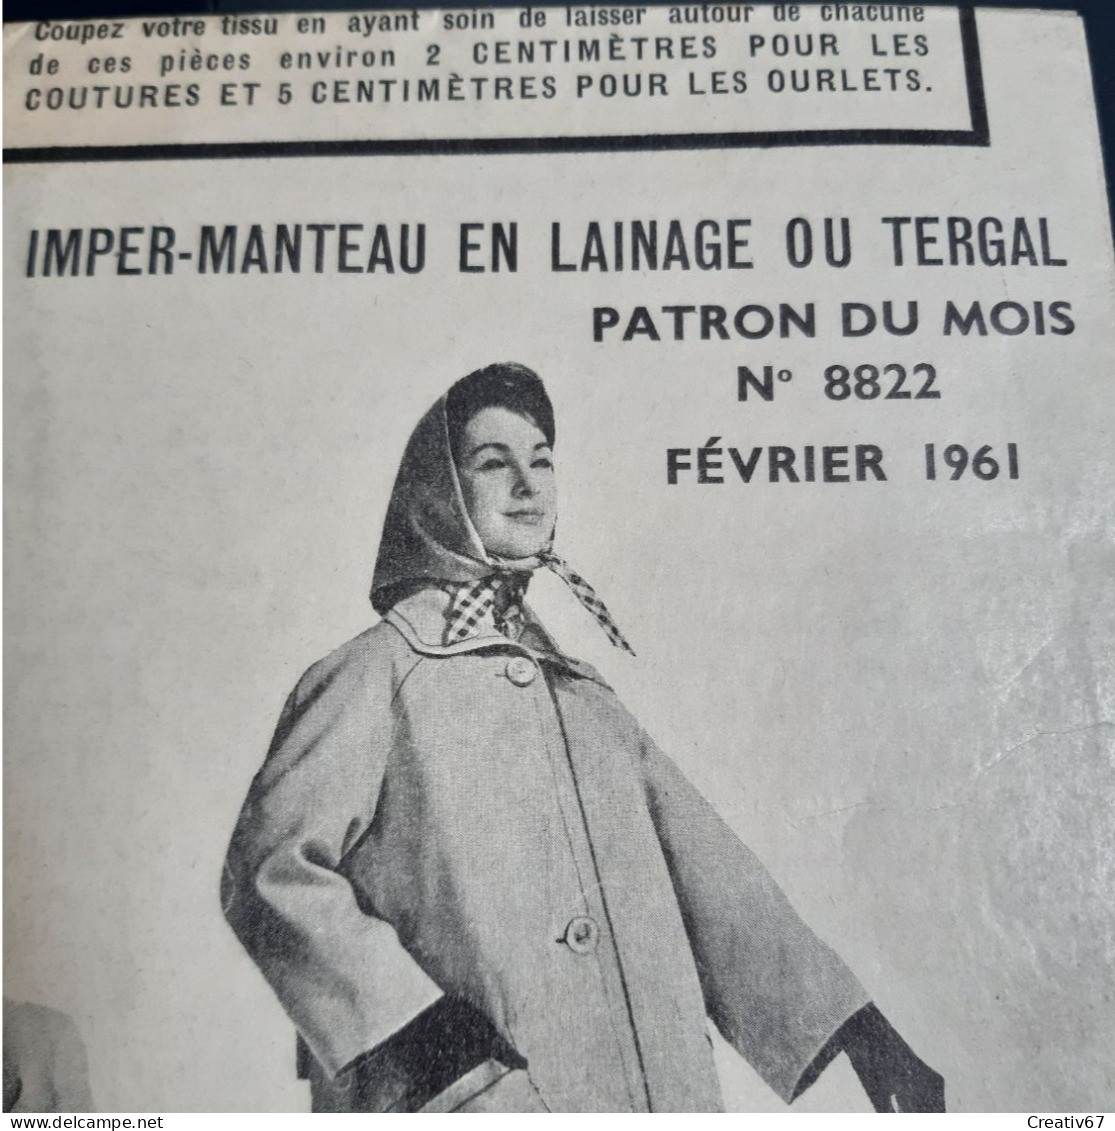 Patron Modes Et Travaux Février 1961 Imper-Manteau En Lainage Ou Tergal - Patrons